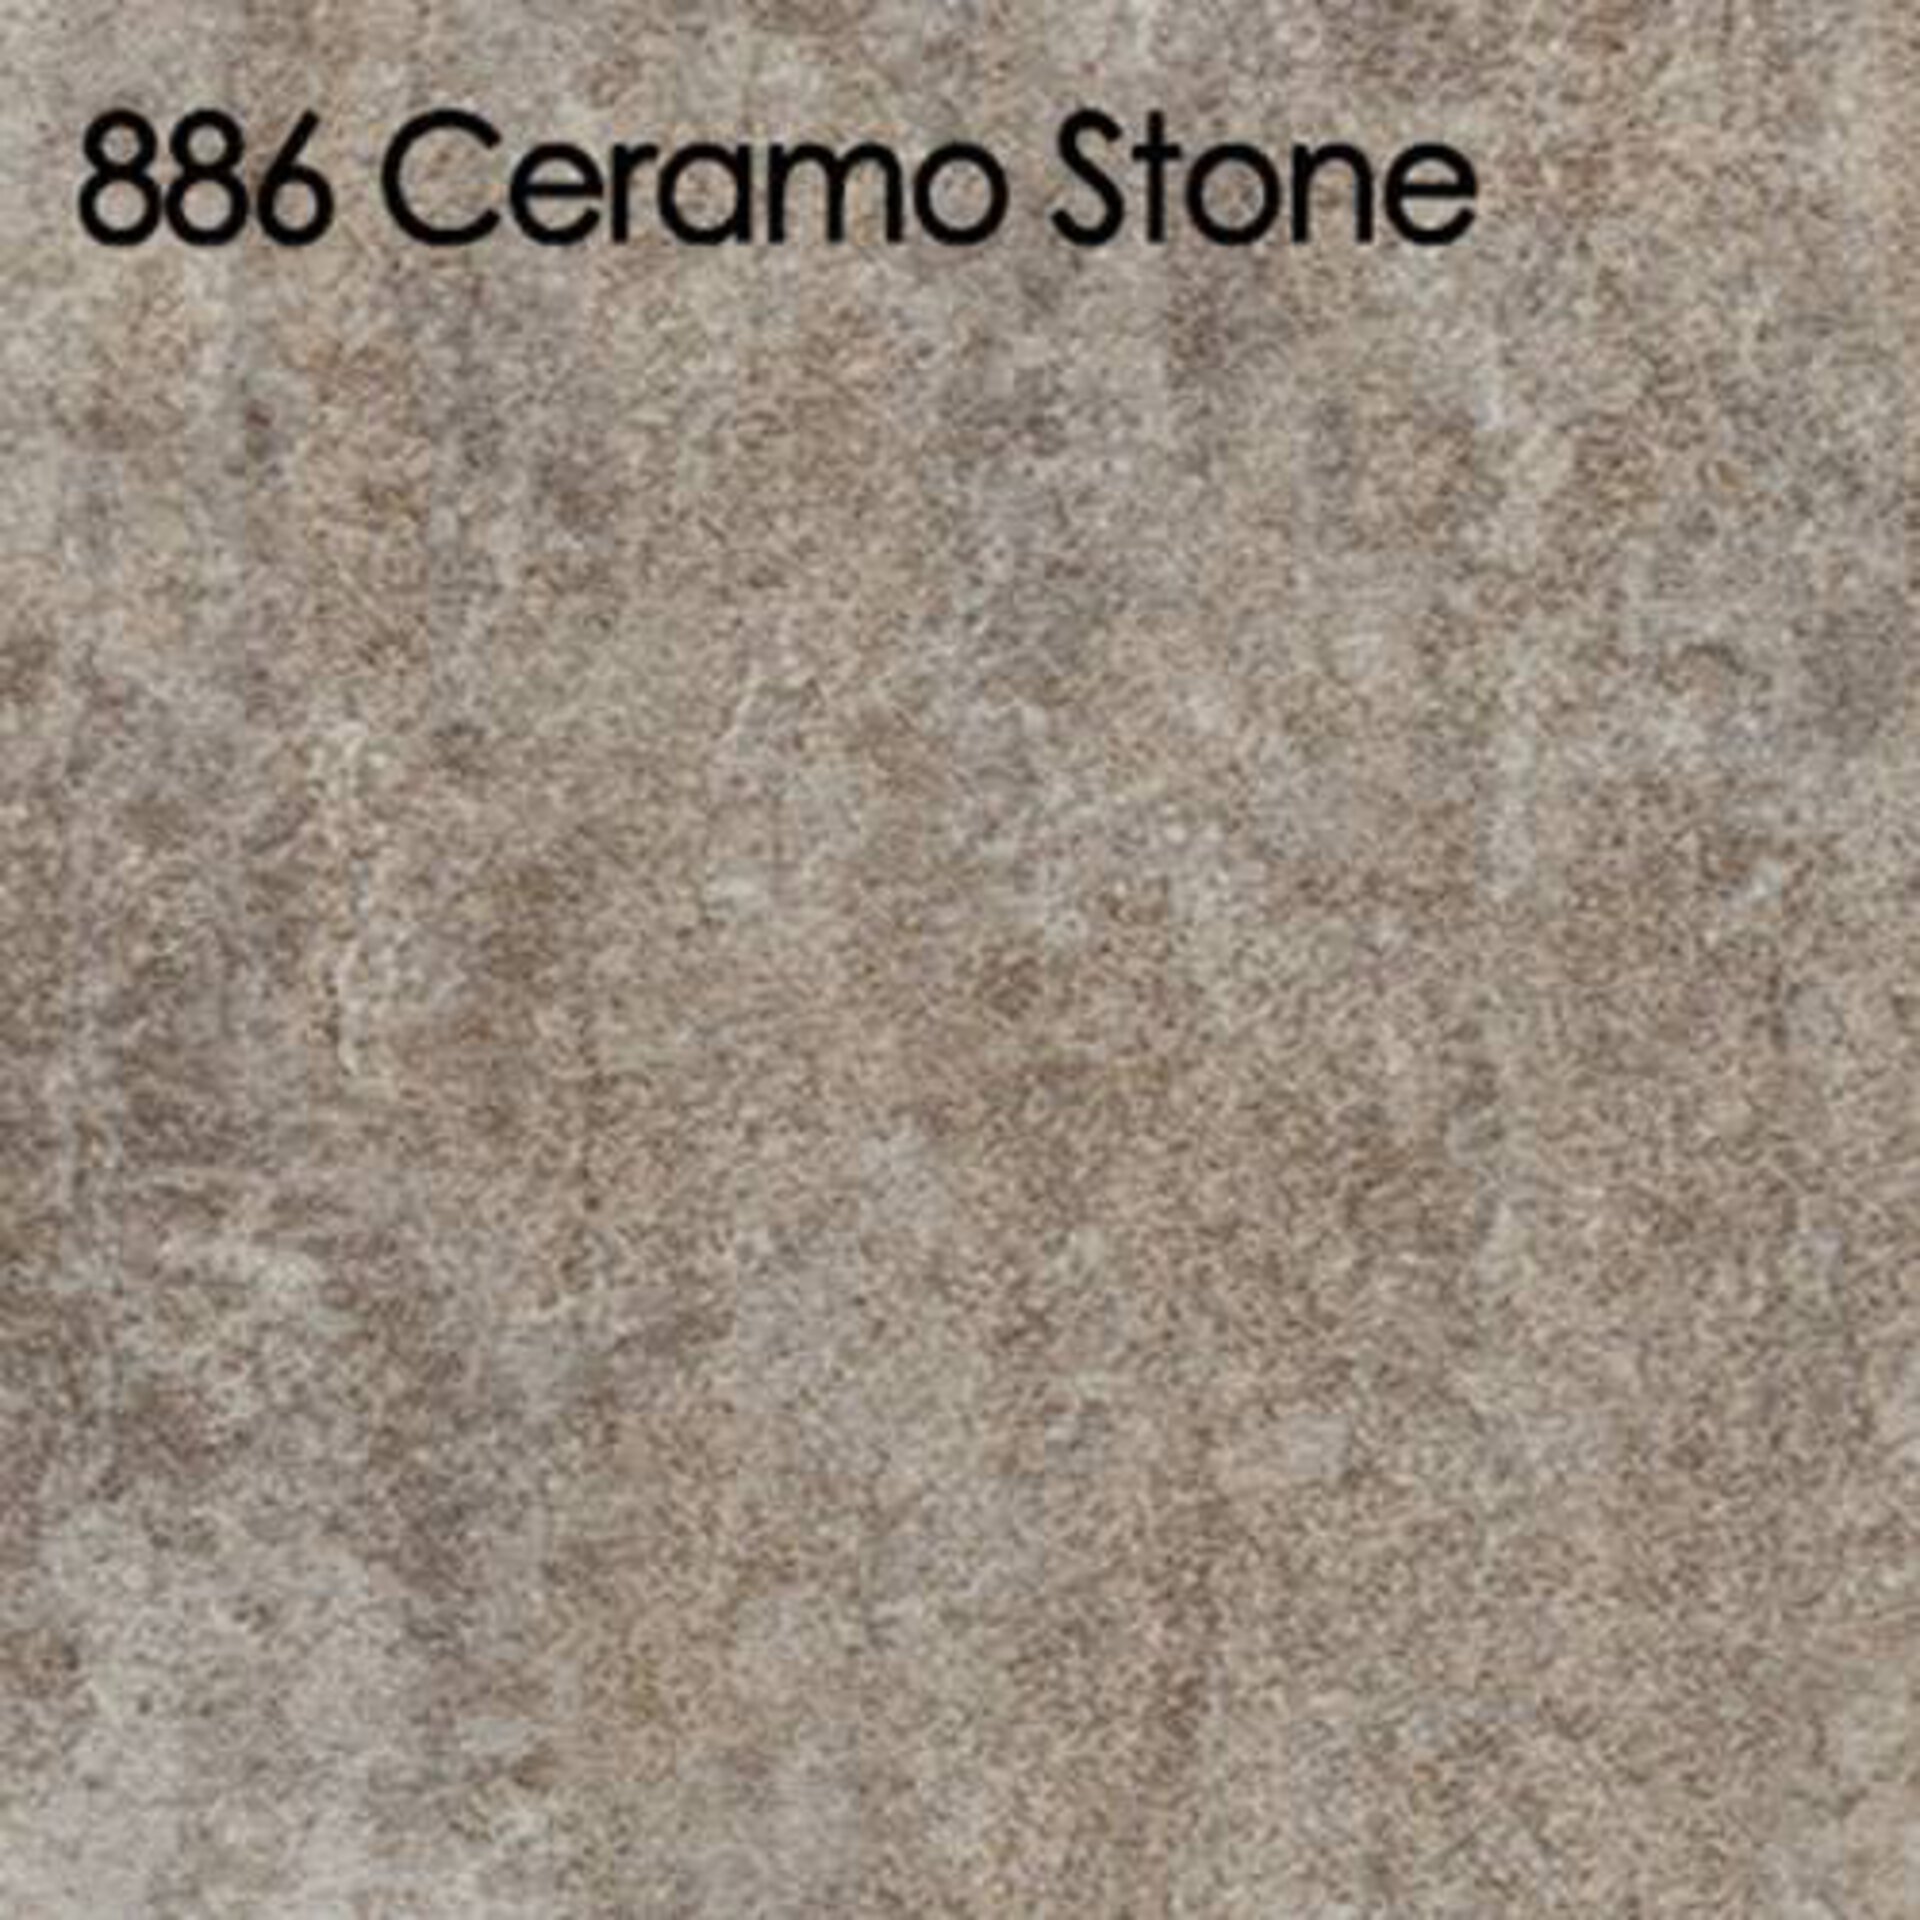 Arbeitsplatte aus Laminat in der cremigen Steinoptik Ceramo Stone